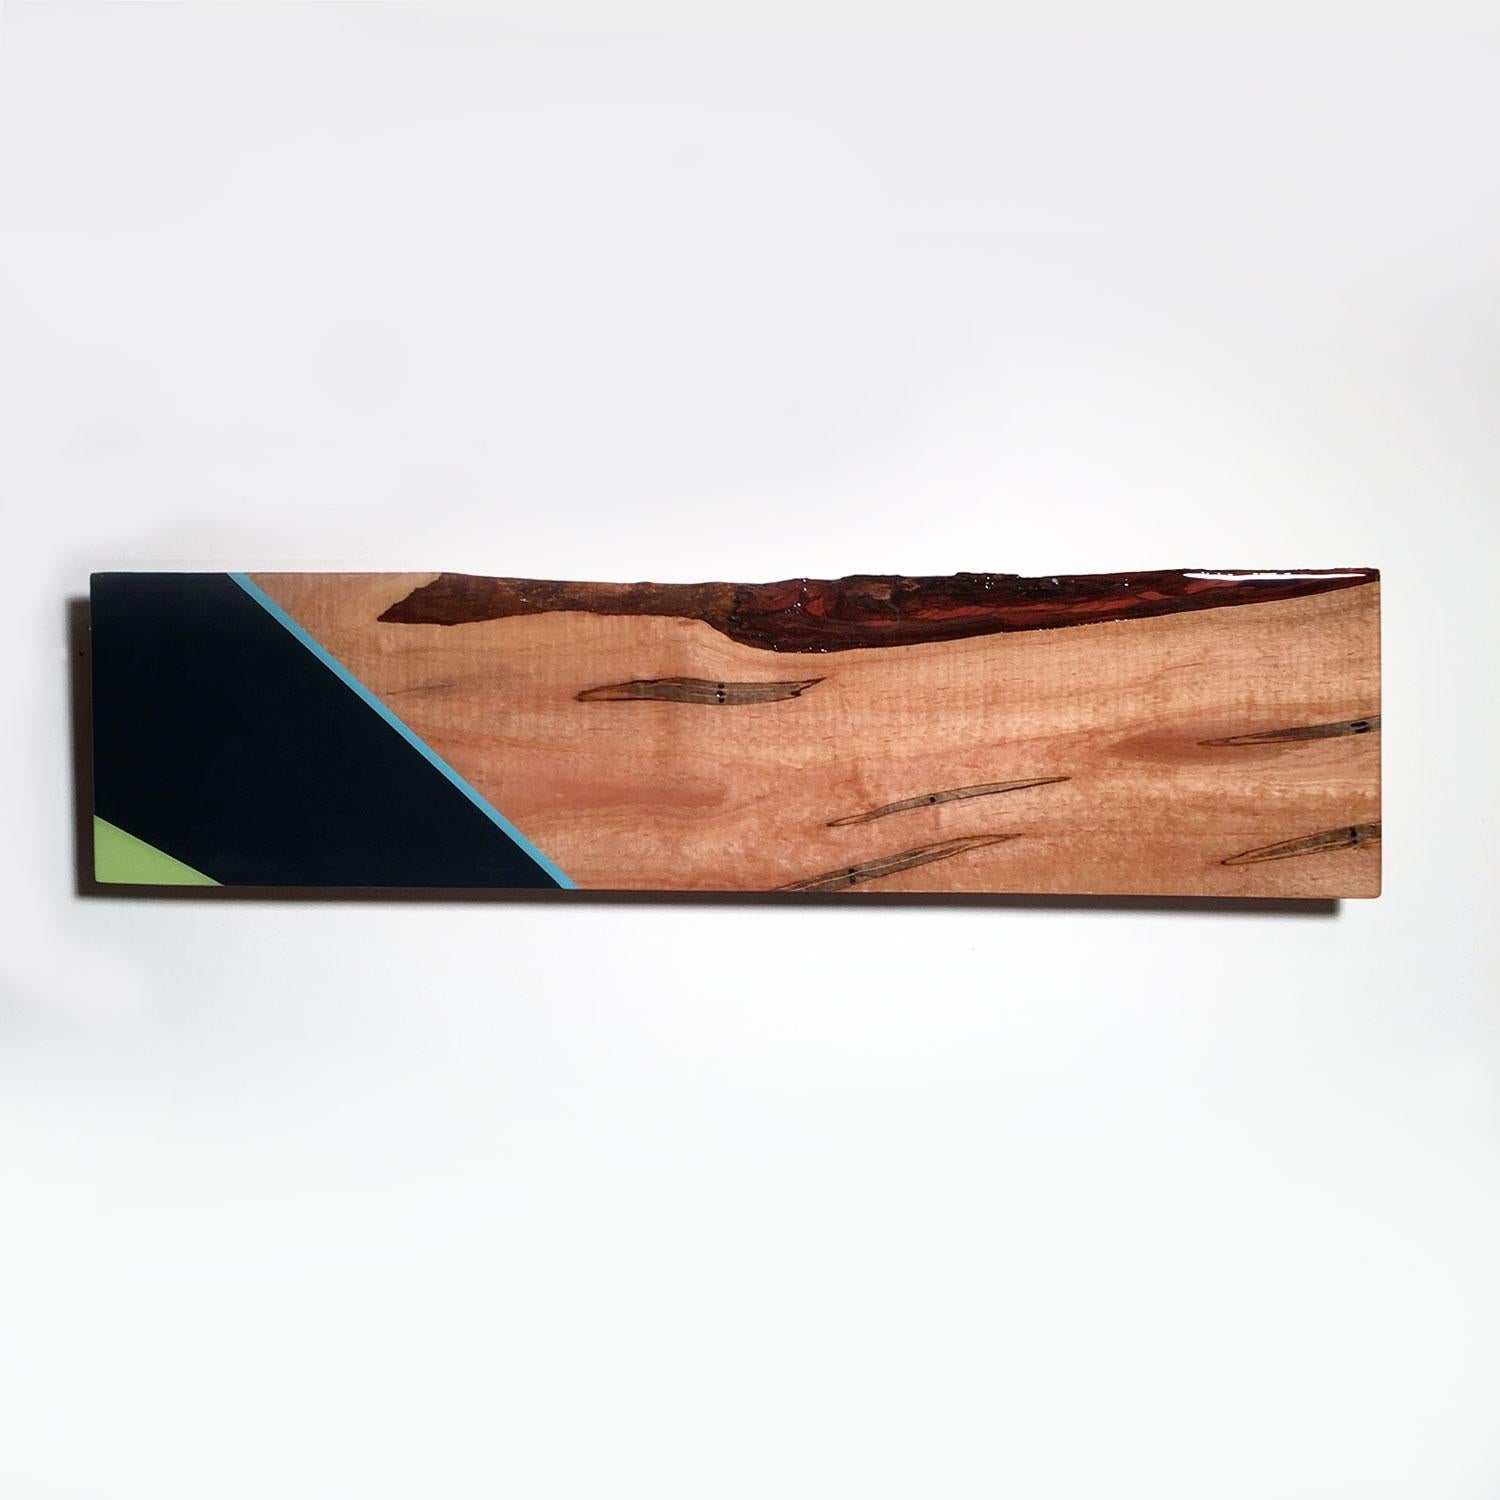 Abstract Sculpture David E. Peterson - Mini Leaner n° 9, sculpture murale contemporaine verte et bleue, bois exotique brillant